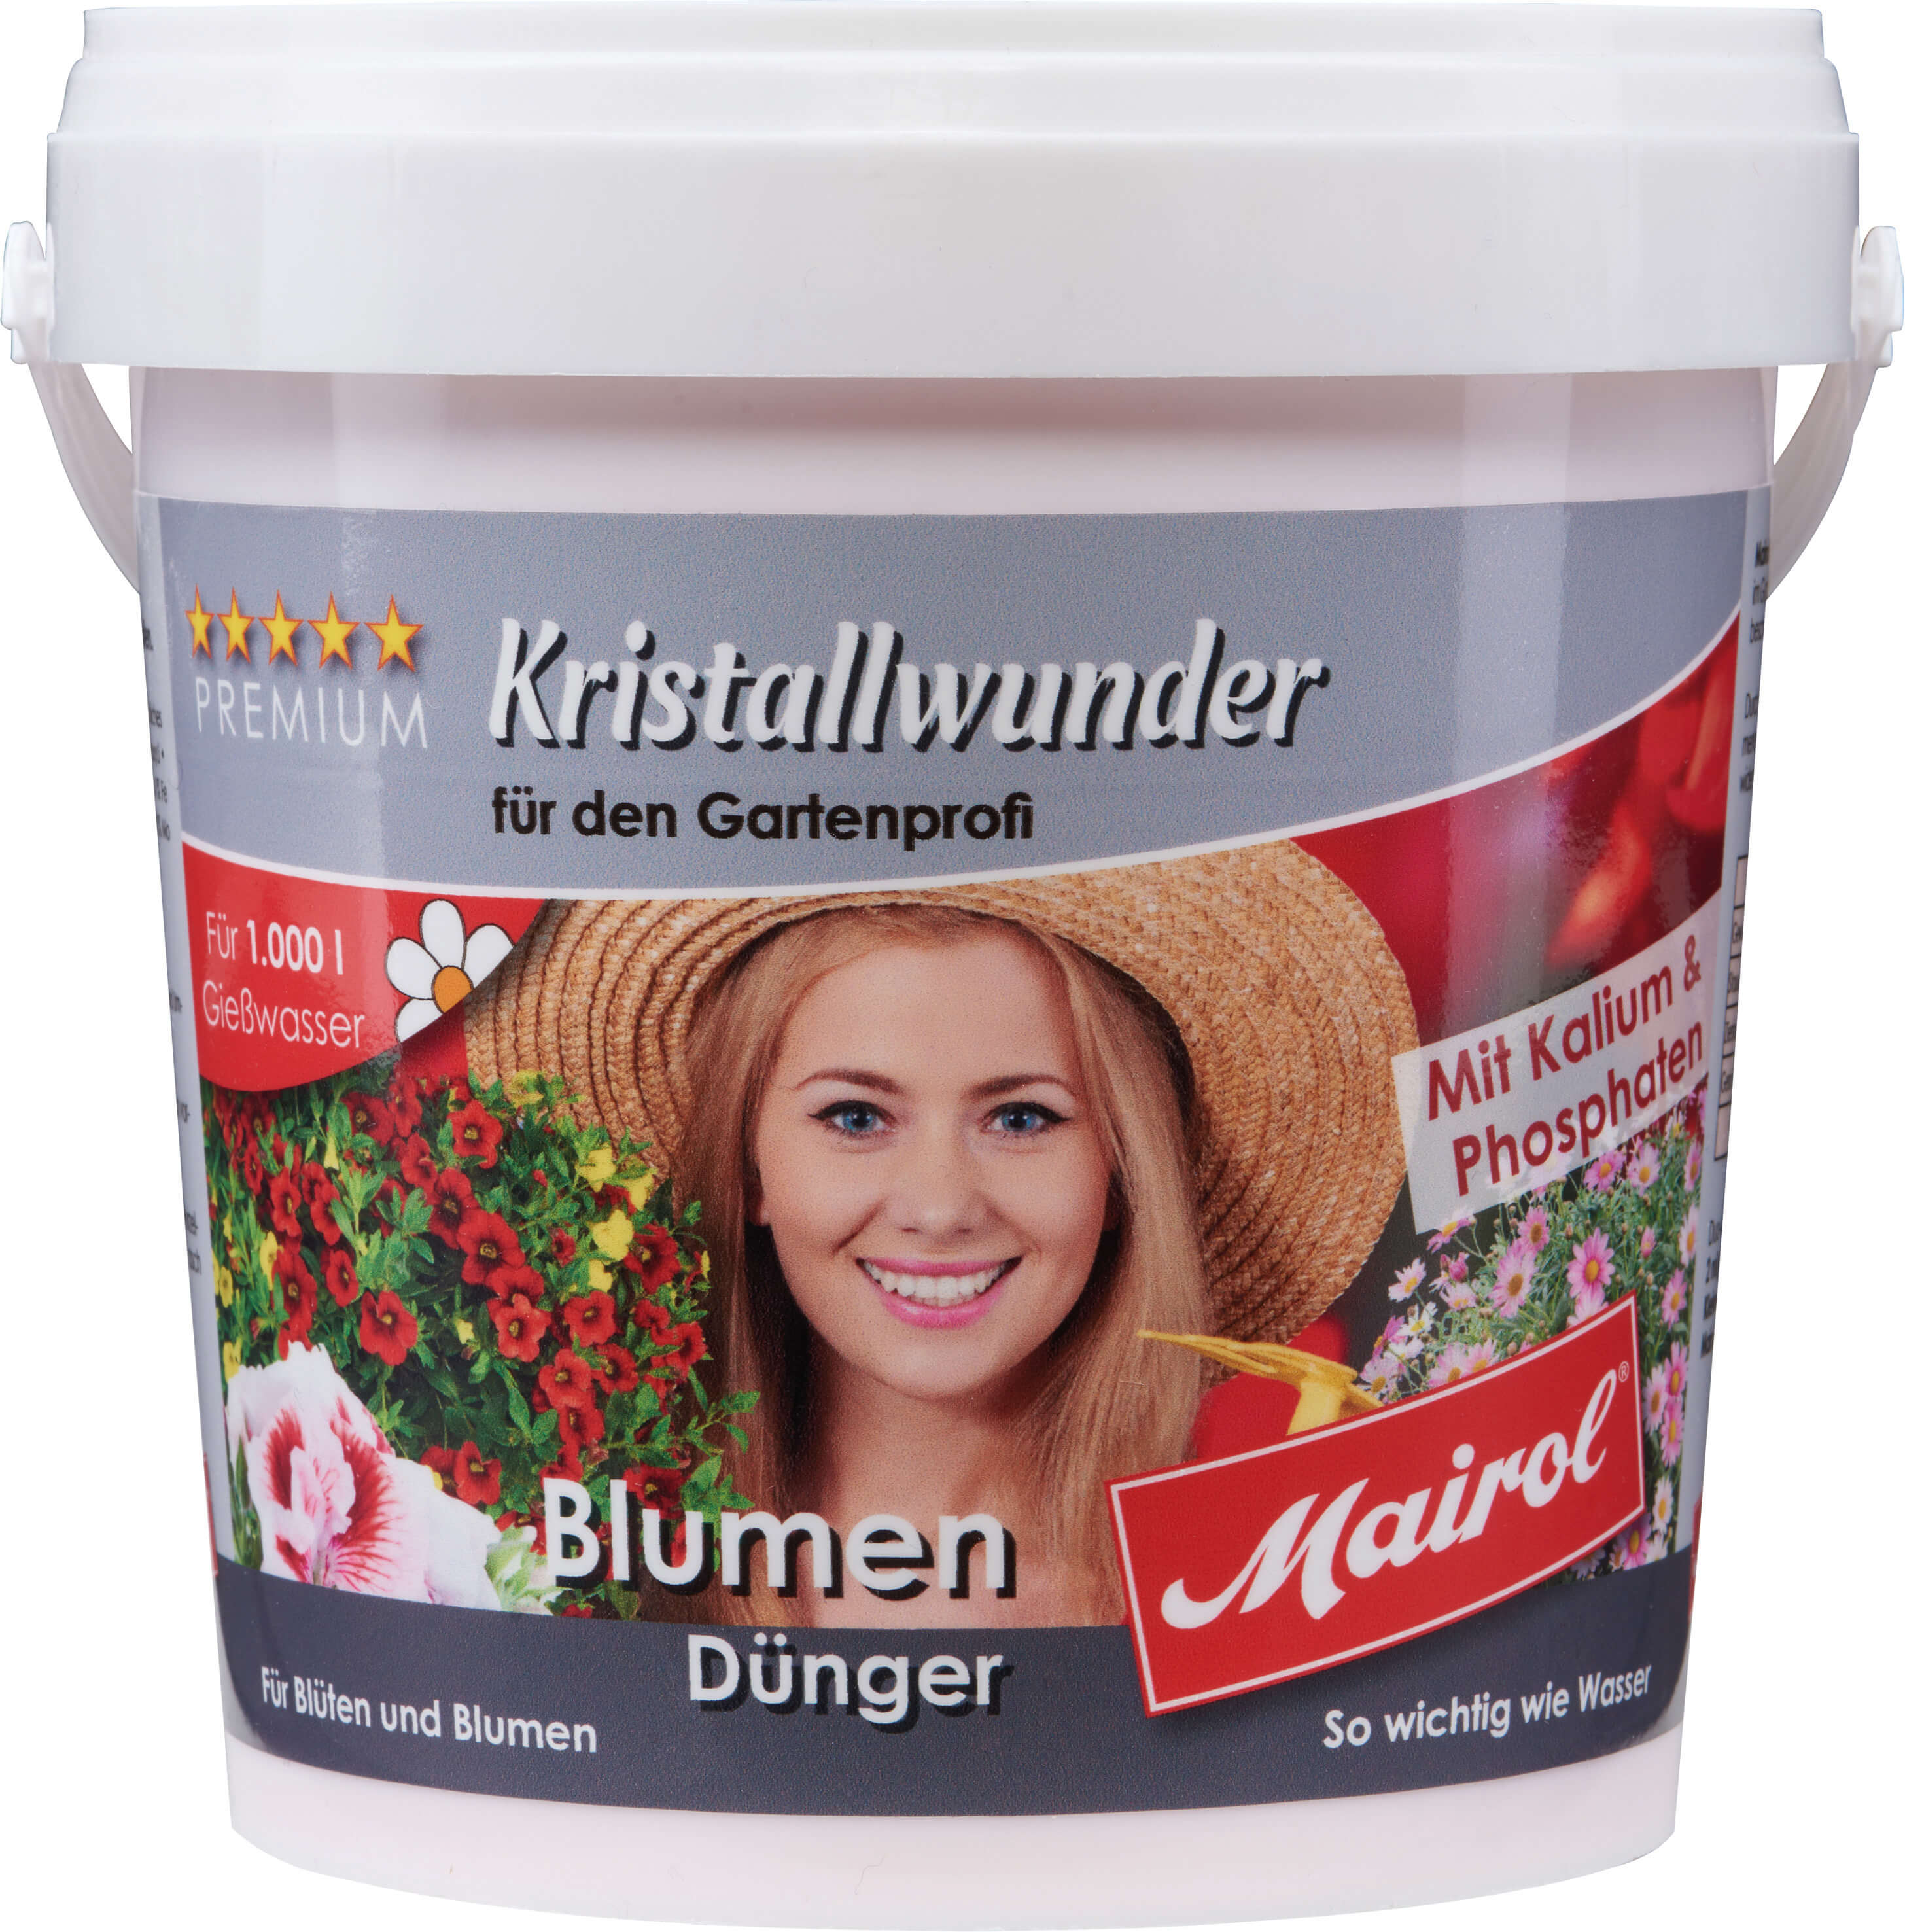 Blumendünger-Salz MAIROL, 1 KG Dose reicht für 1000 Liter Gießwasser